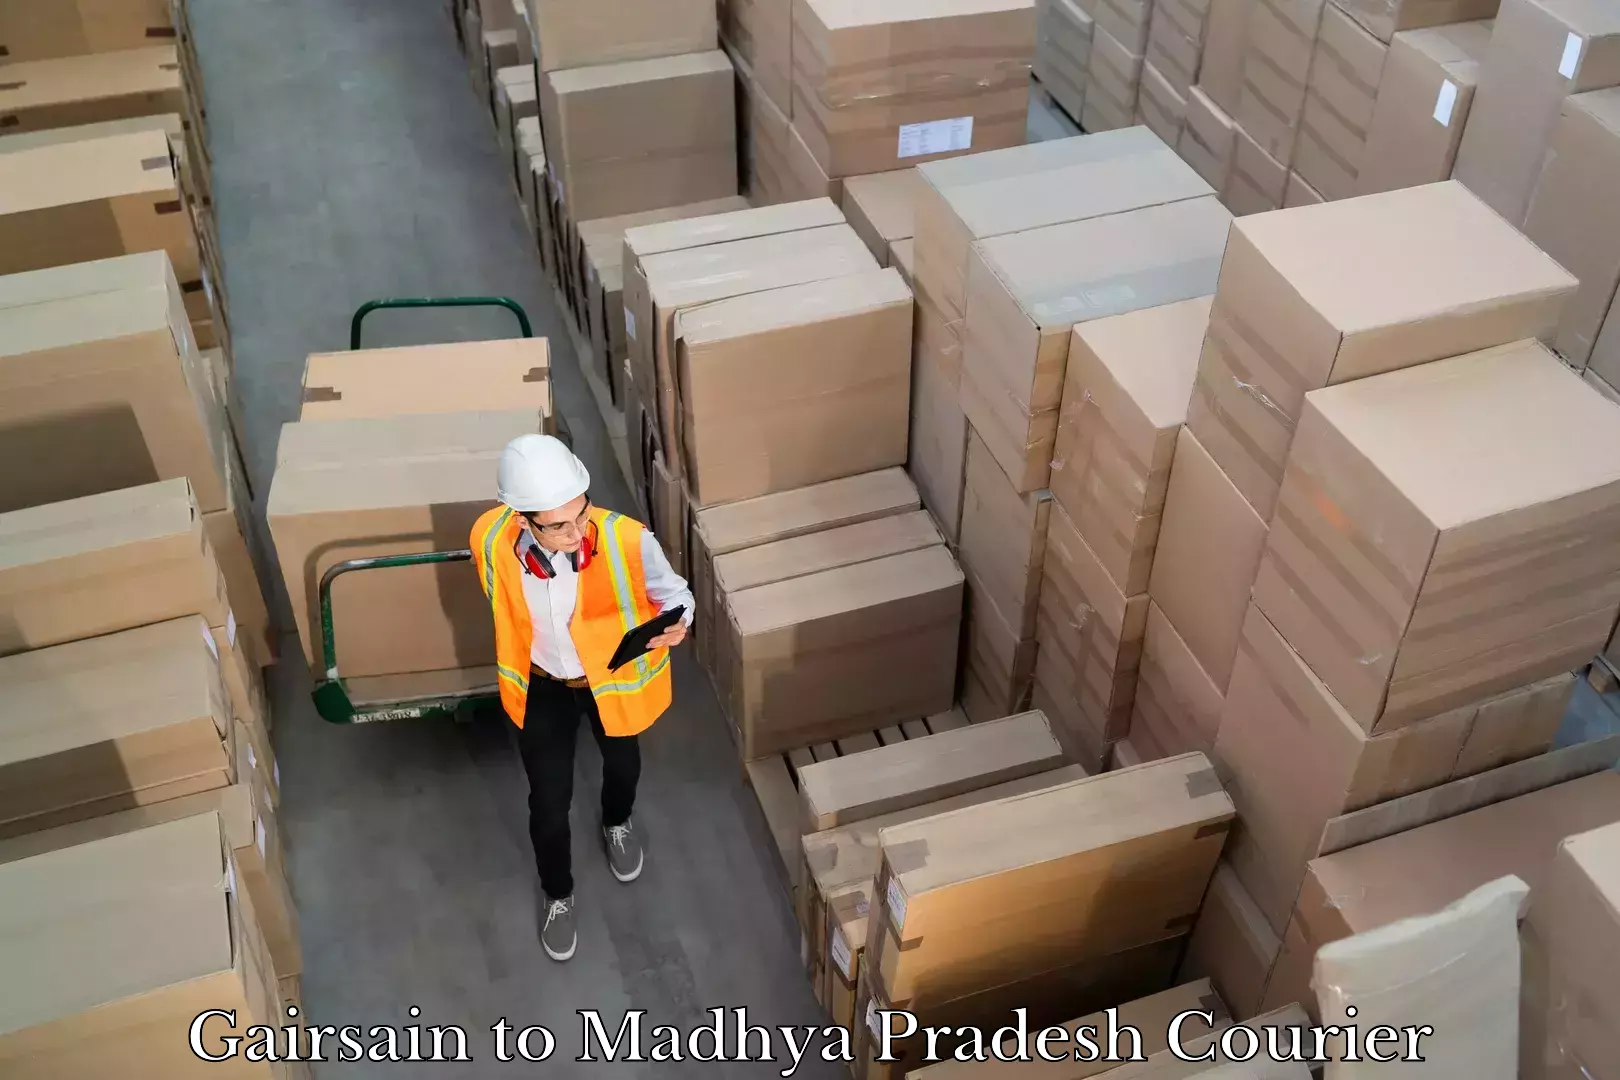 Professional courier handling Gairsain to Madhya Pradesh